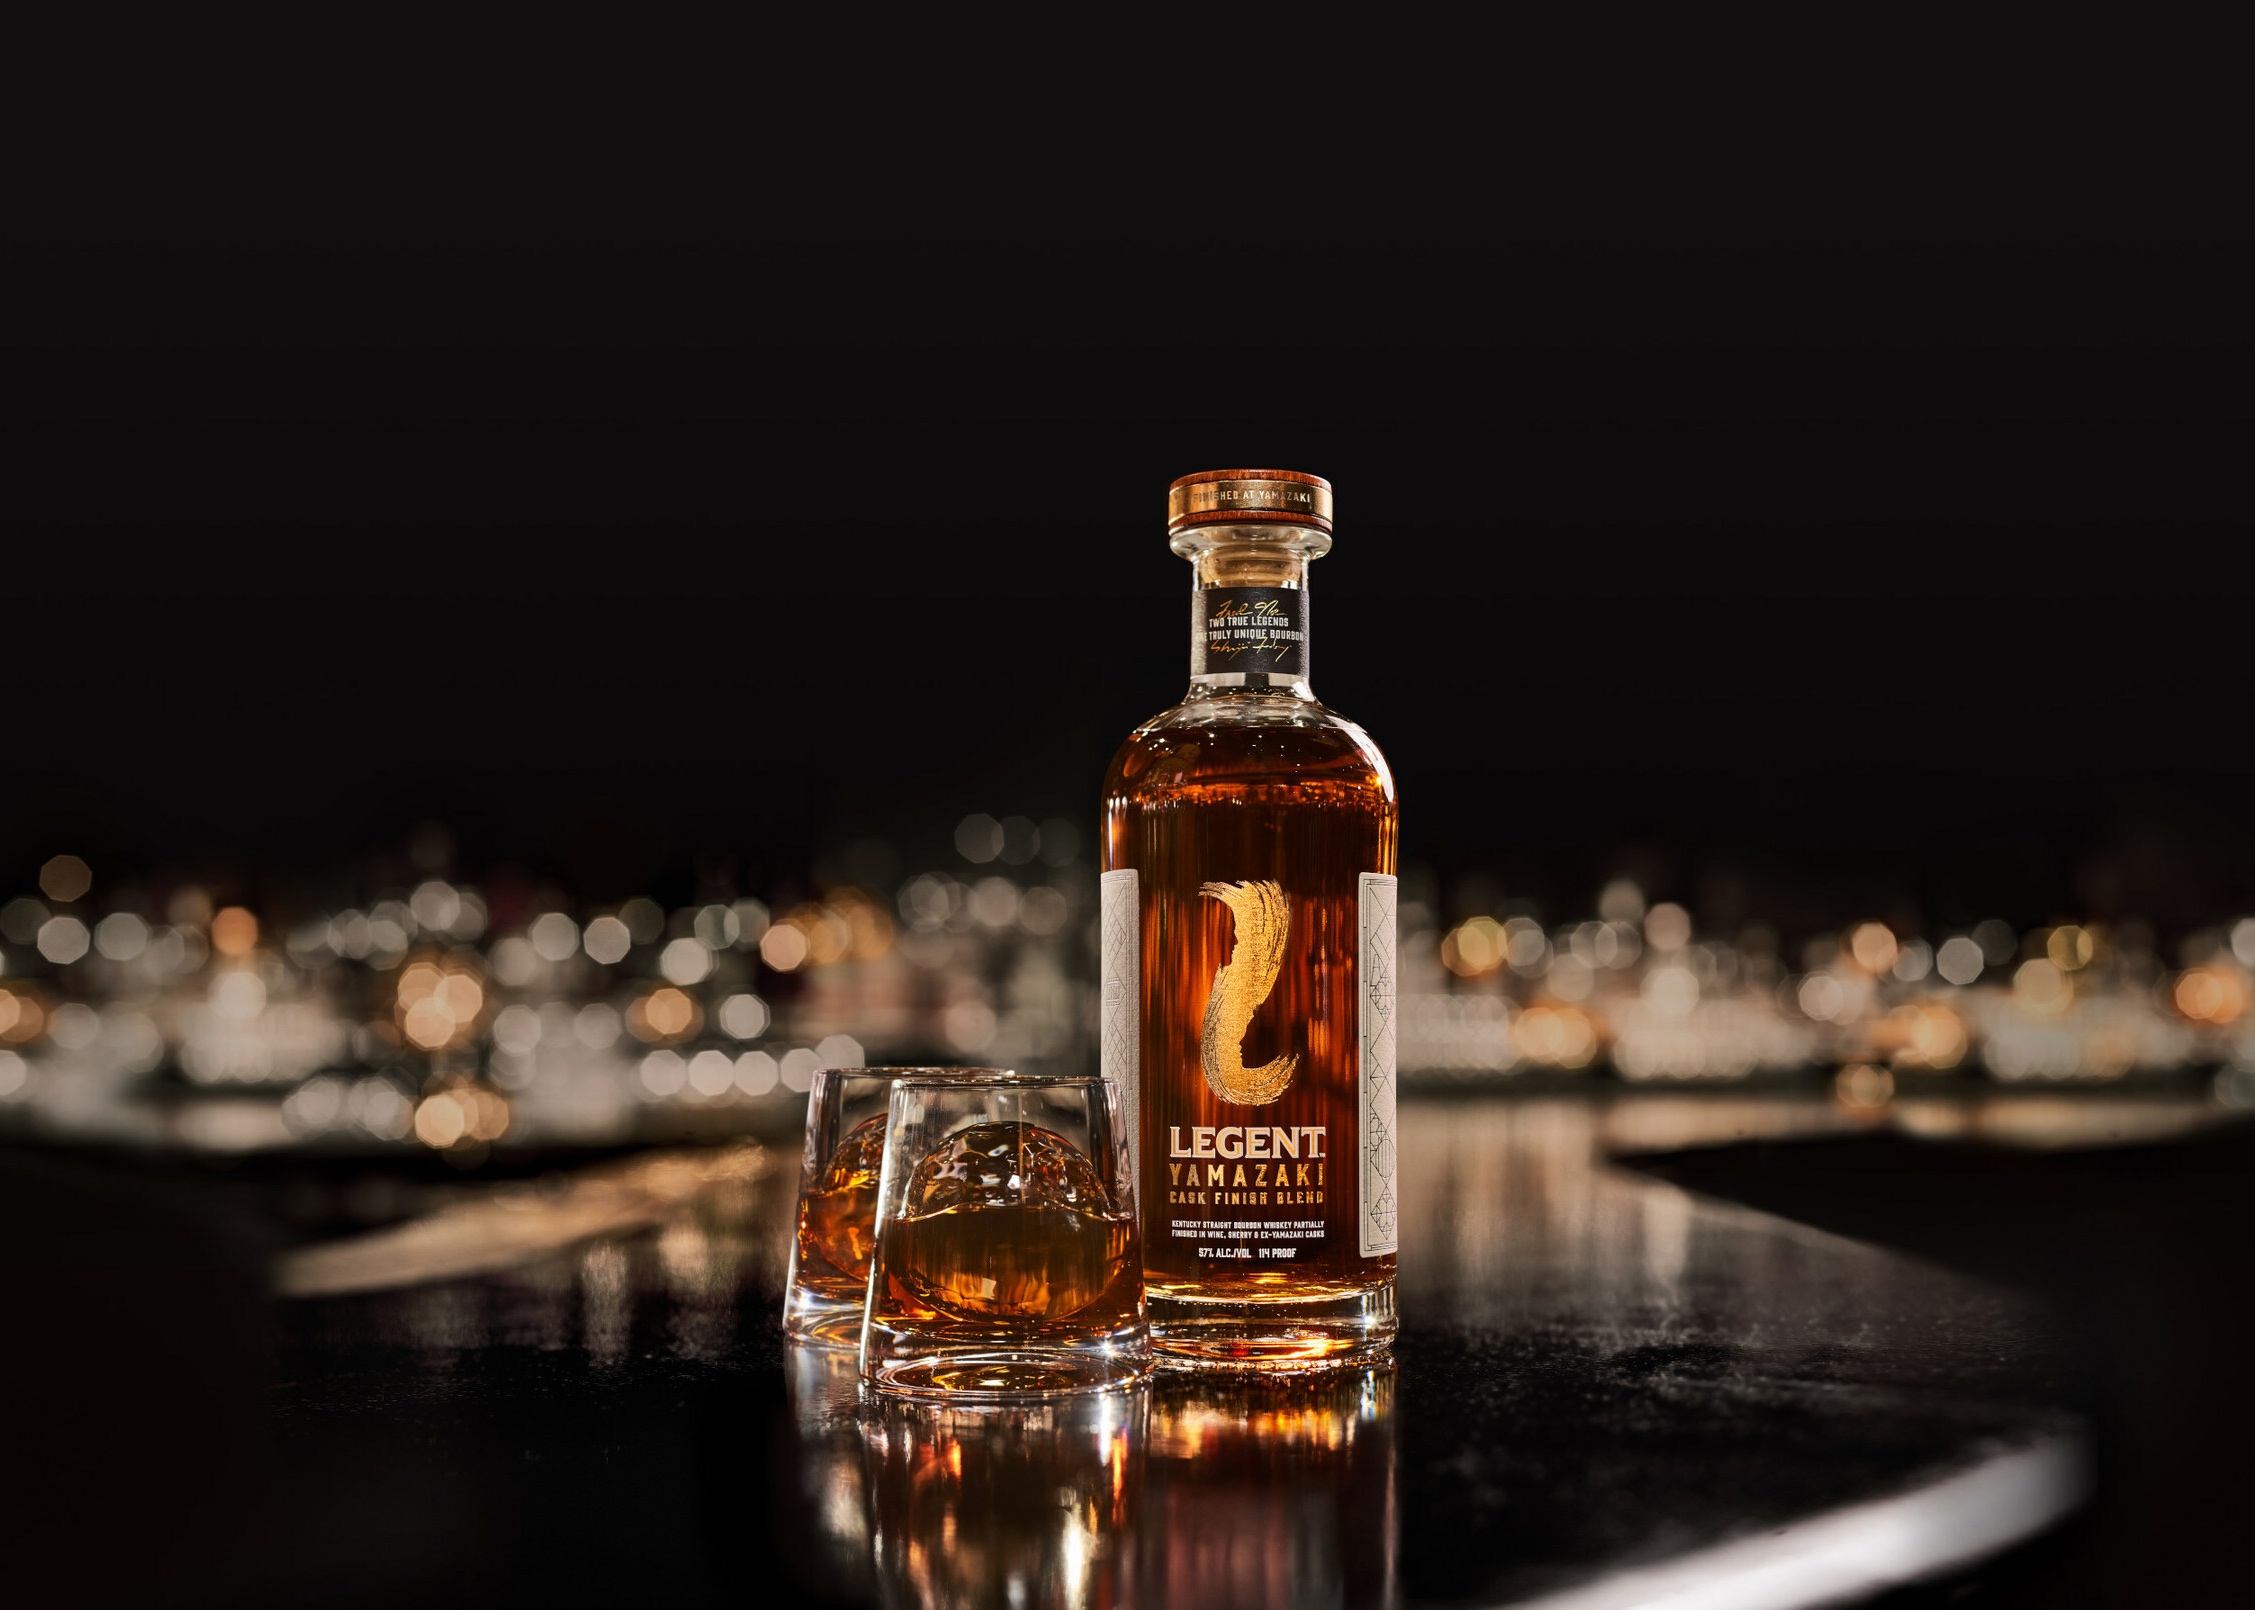 Legent Yamazaki Cask Finish bourbon bottle on black background